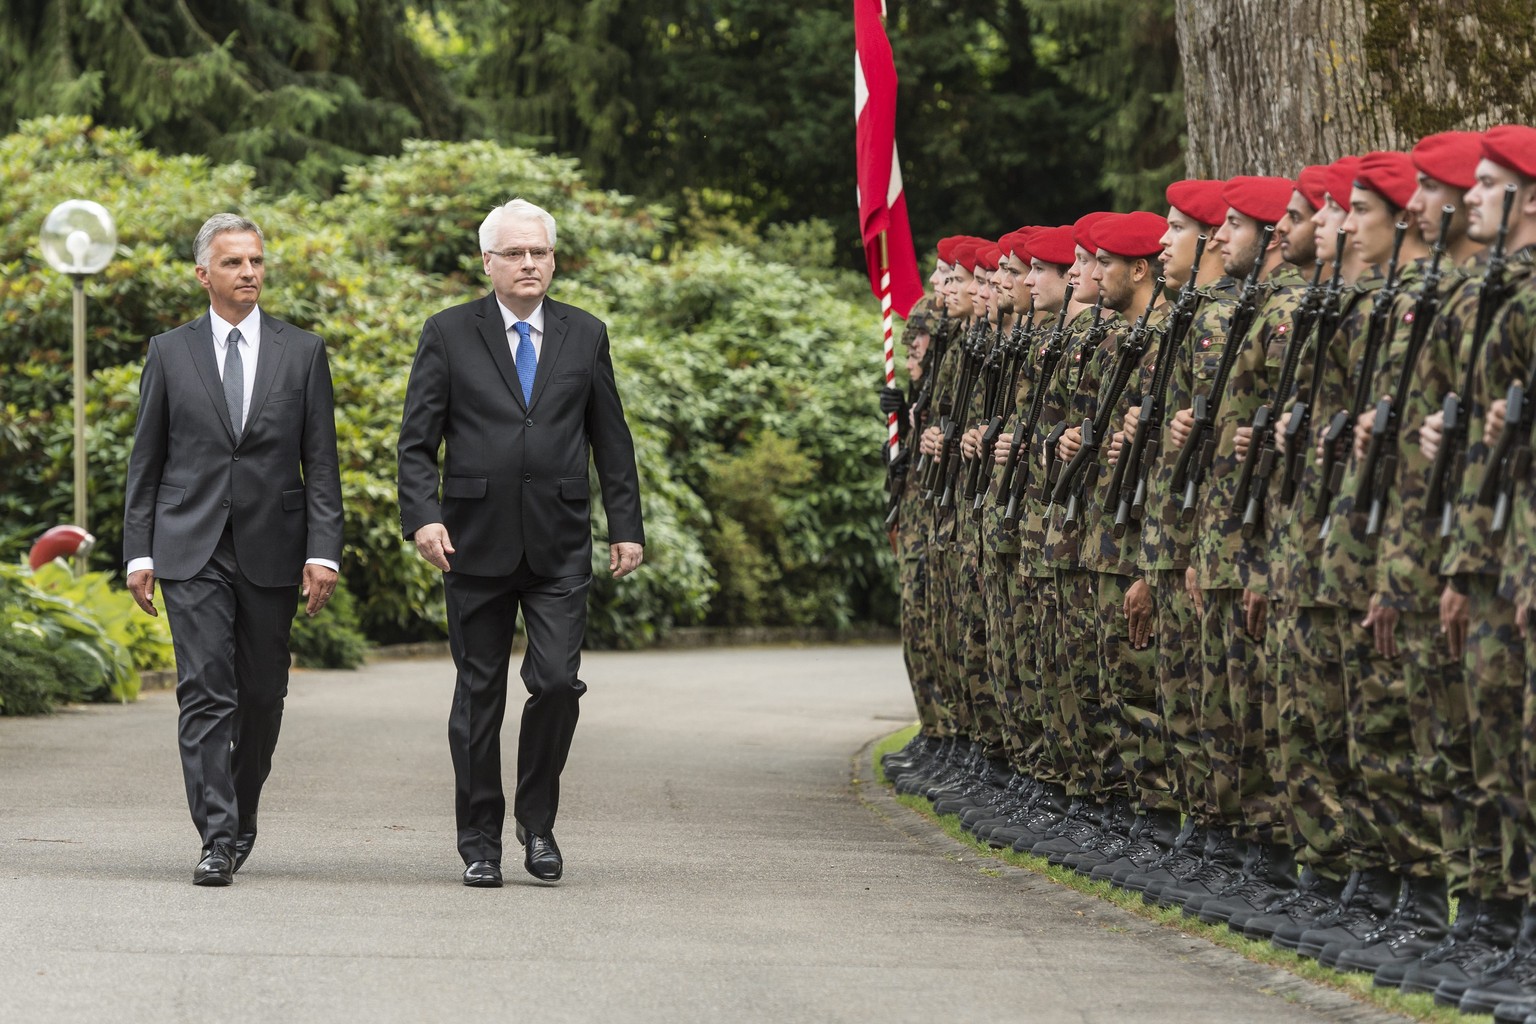 Soldaten der Schweizer Armee stehen für Bundespräsident Didier Burkhalter und den kroatischen Präsidenten Ivo Josipovic (rechts) in Reihe und Glied.